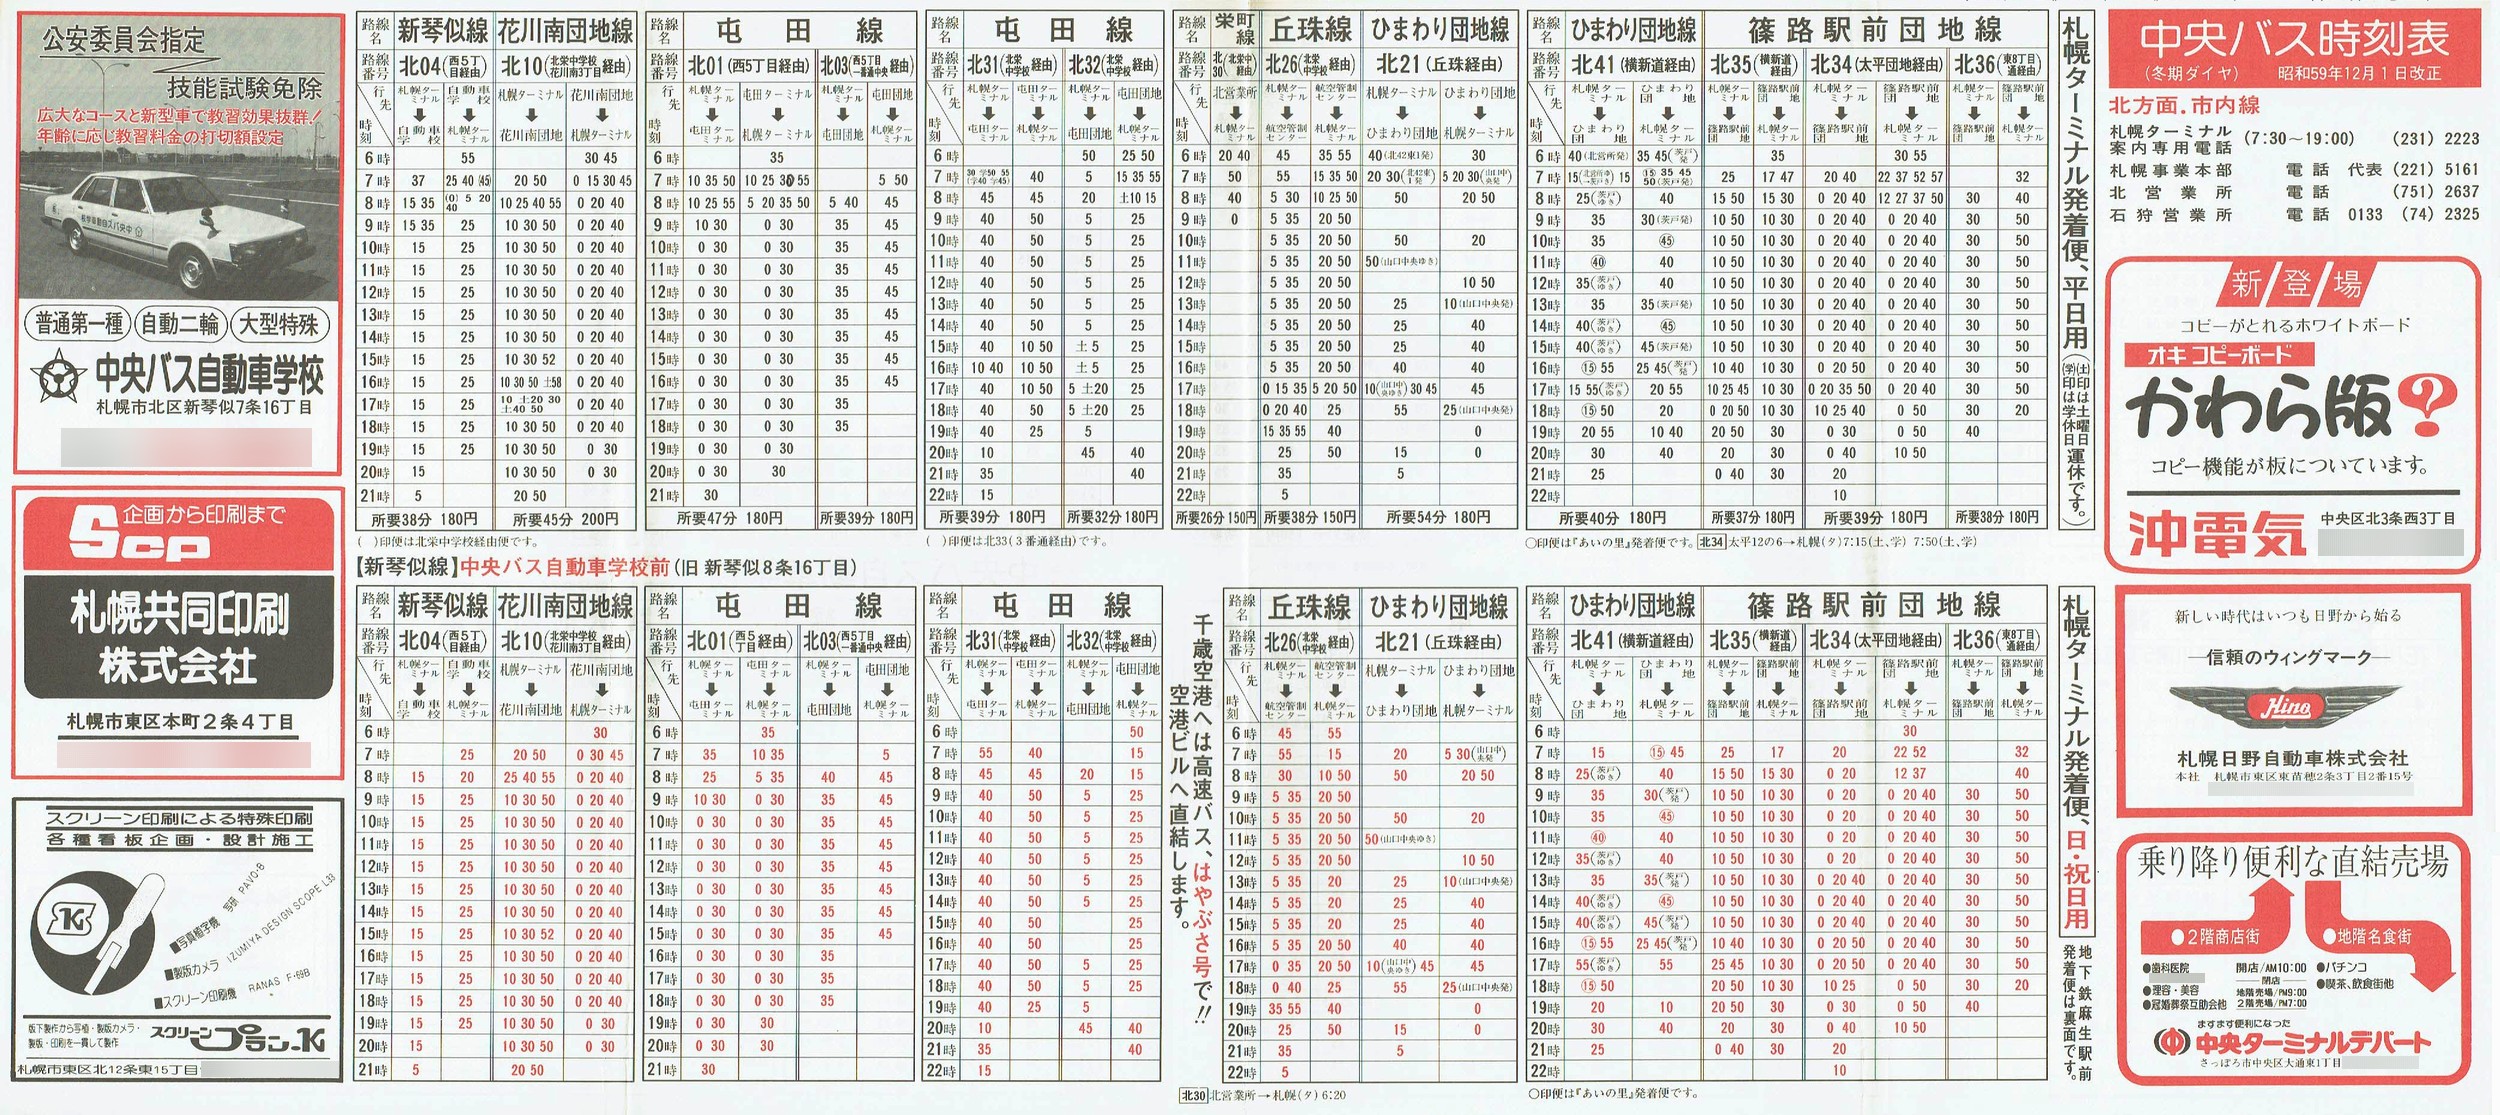 1984-12-01改正_北海道中央バス(札幌)_札幌市内線北方面時刻表表面